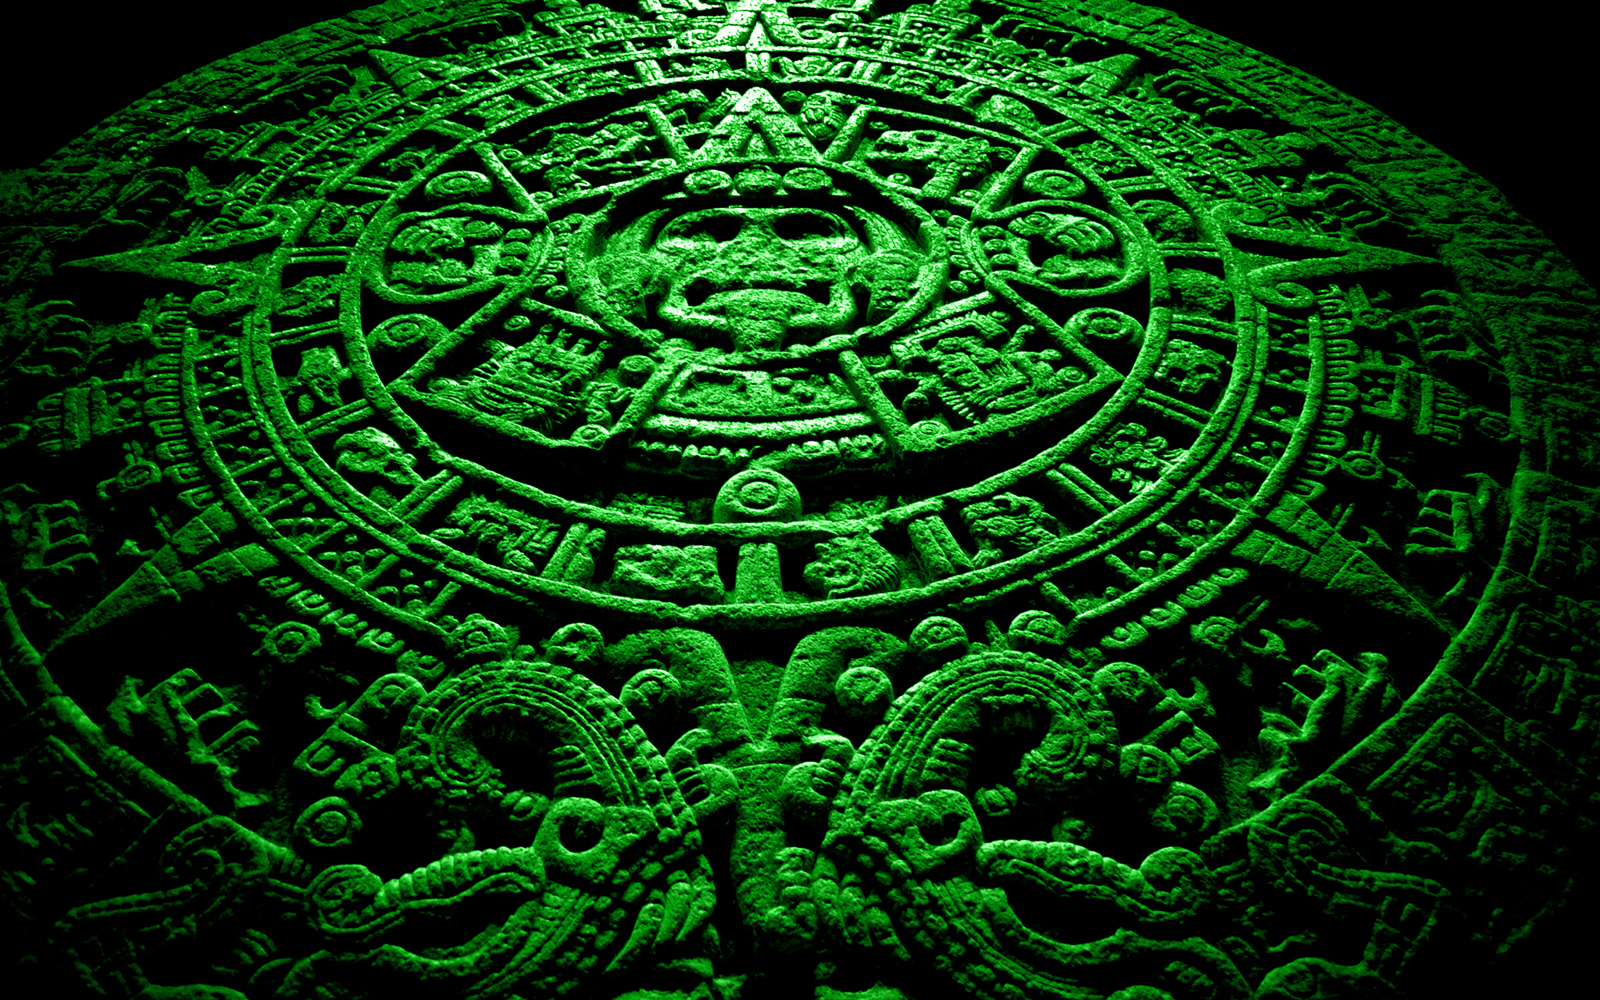 La Profezia Dei Maya Stata Reinterpretata Di Recente E Non Parla